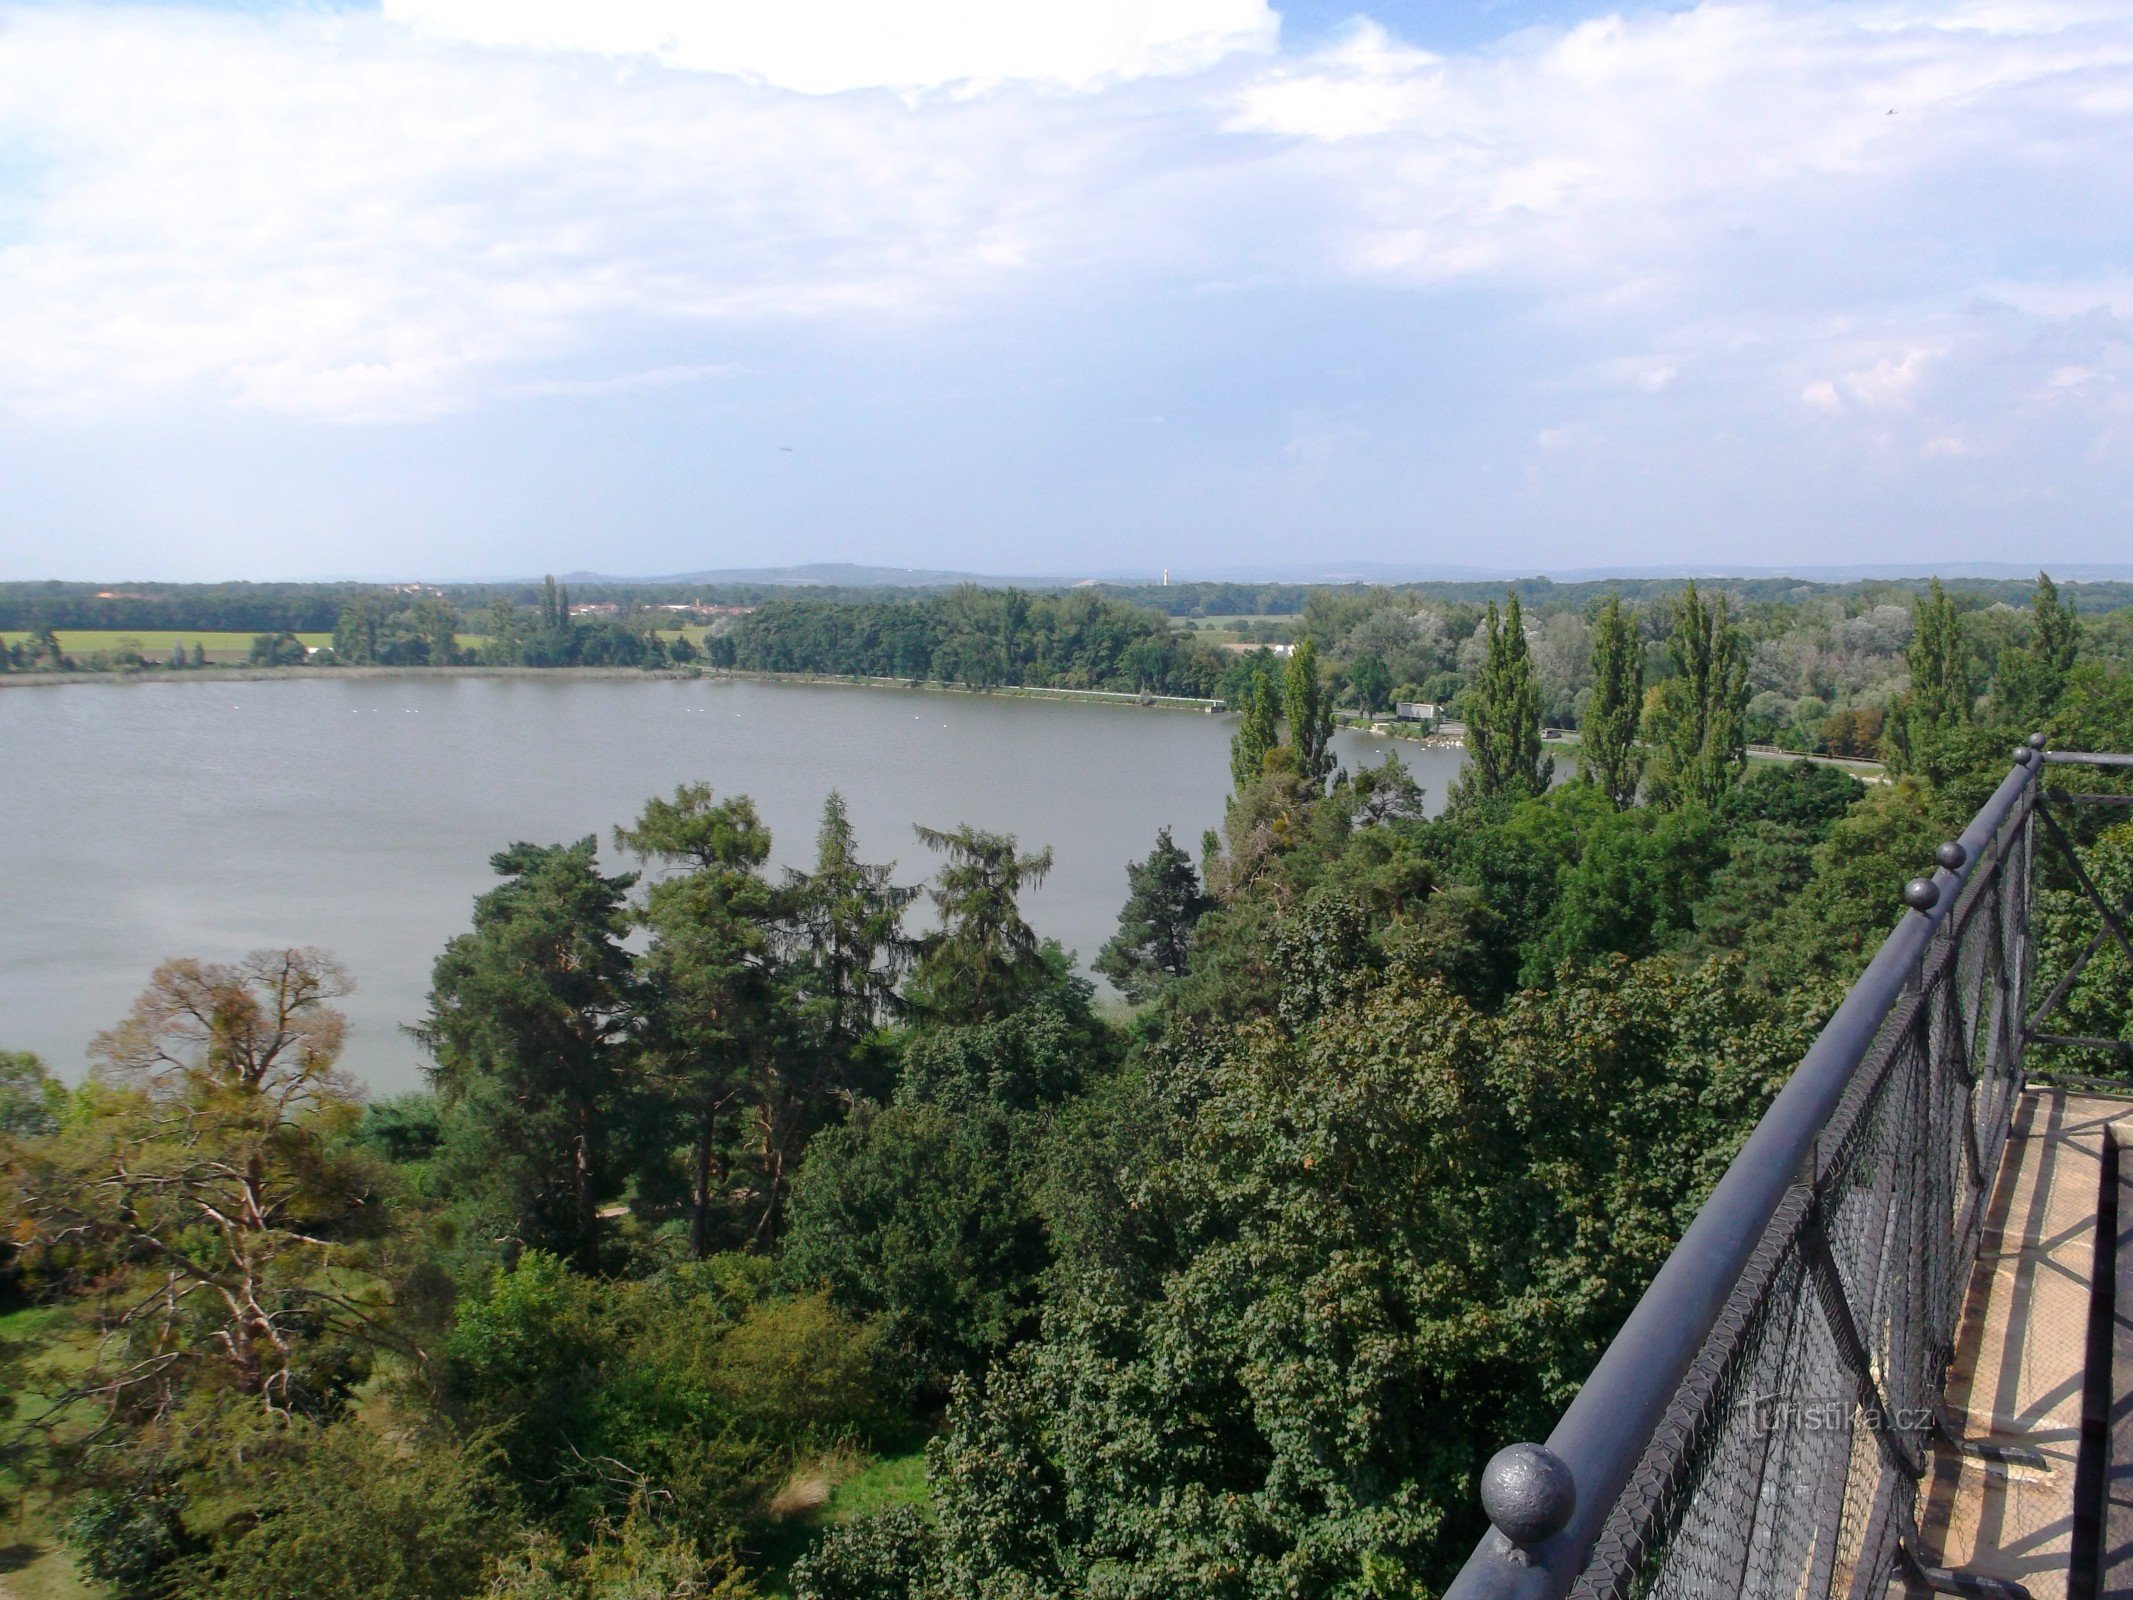 θέα από τη βεράντα - την κατεύθυνση του μιναρέ, το κάστρο